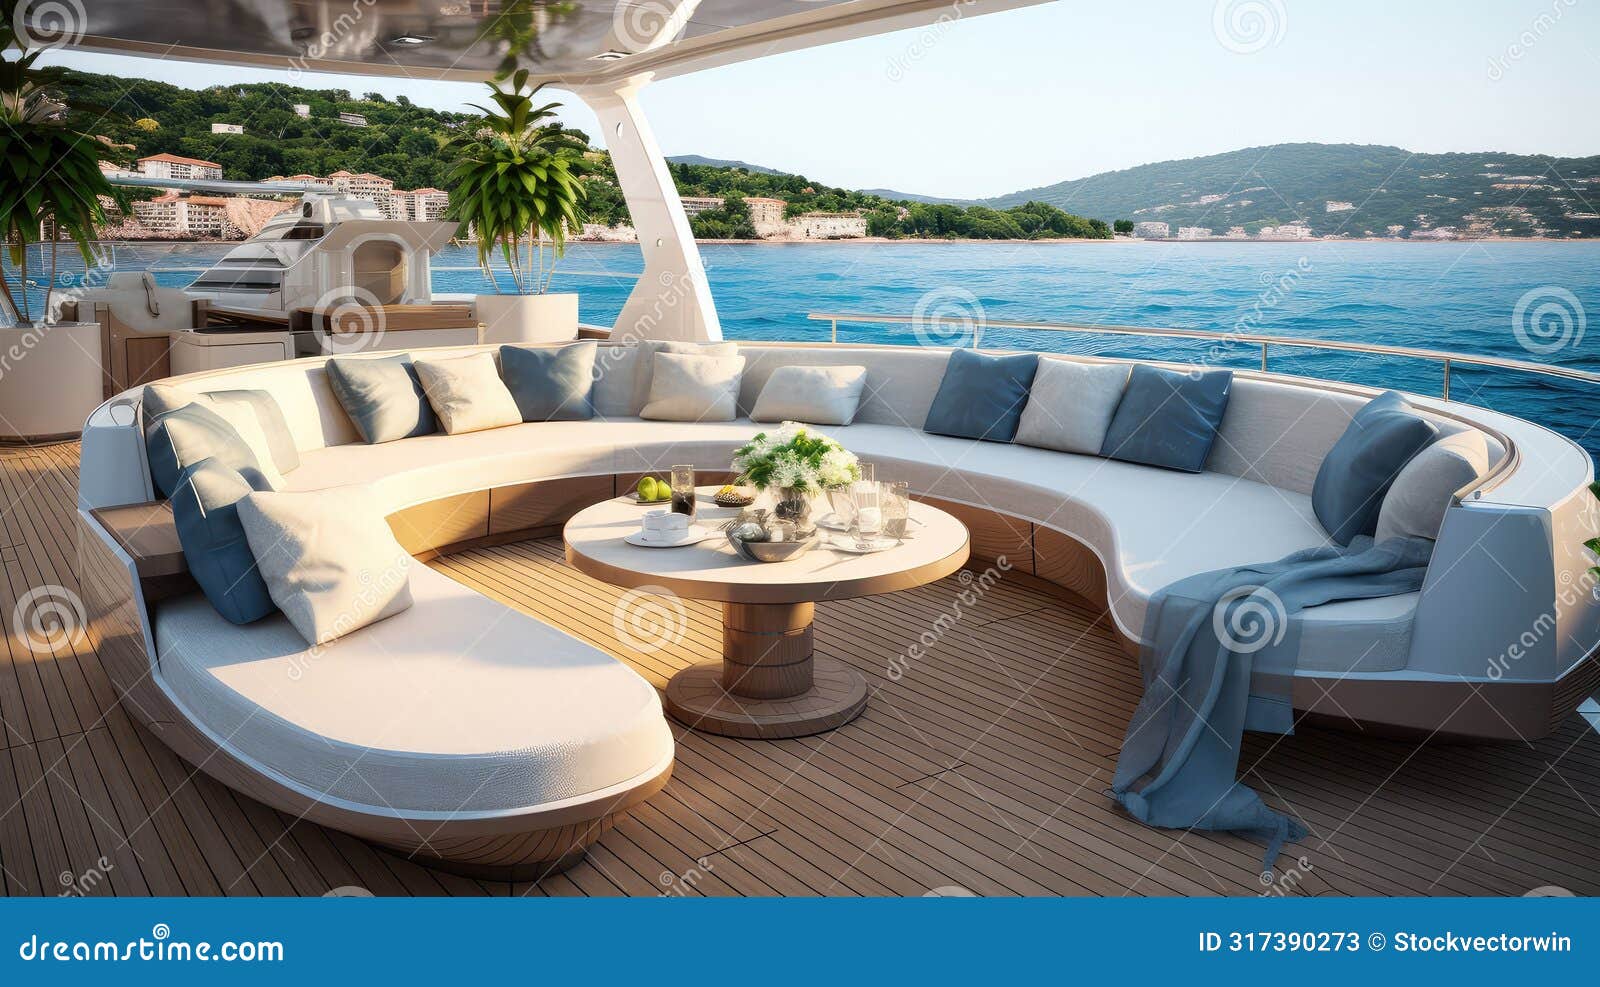 opulent luxury boat interior